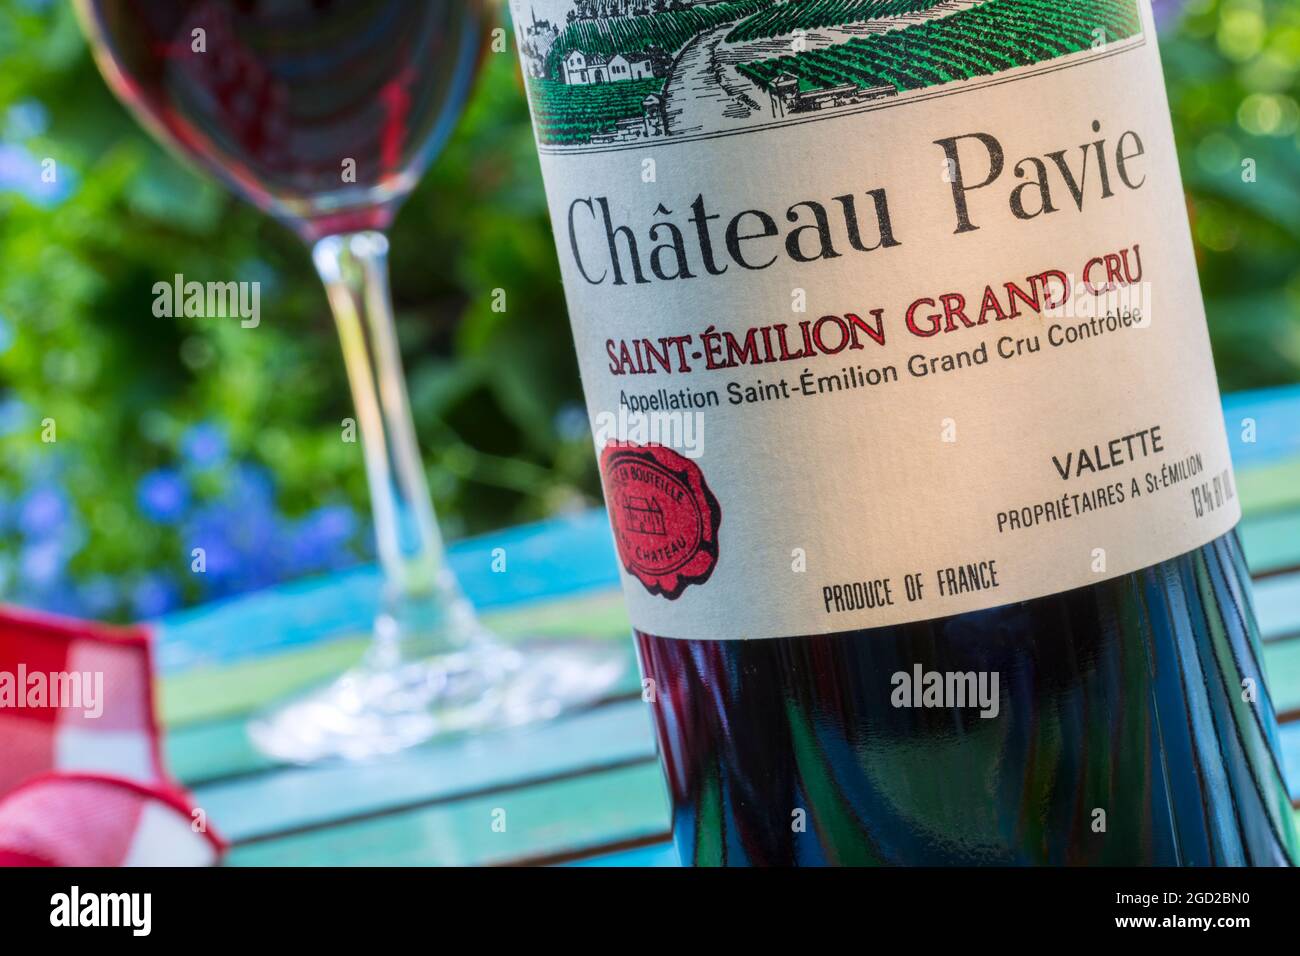 Château Pavie SAINT ÉMILION bouteille et verre de Grand cru St-Émilion Bordeaux vin français en plein air dégustation de vins sur la terrasse du jardin Banque D'Images